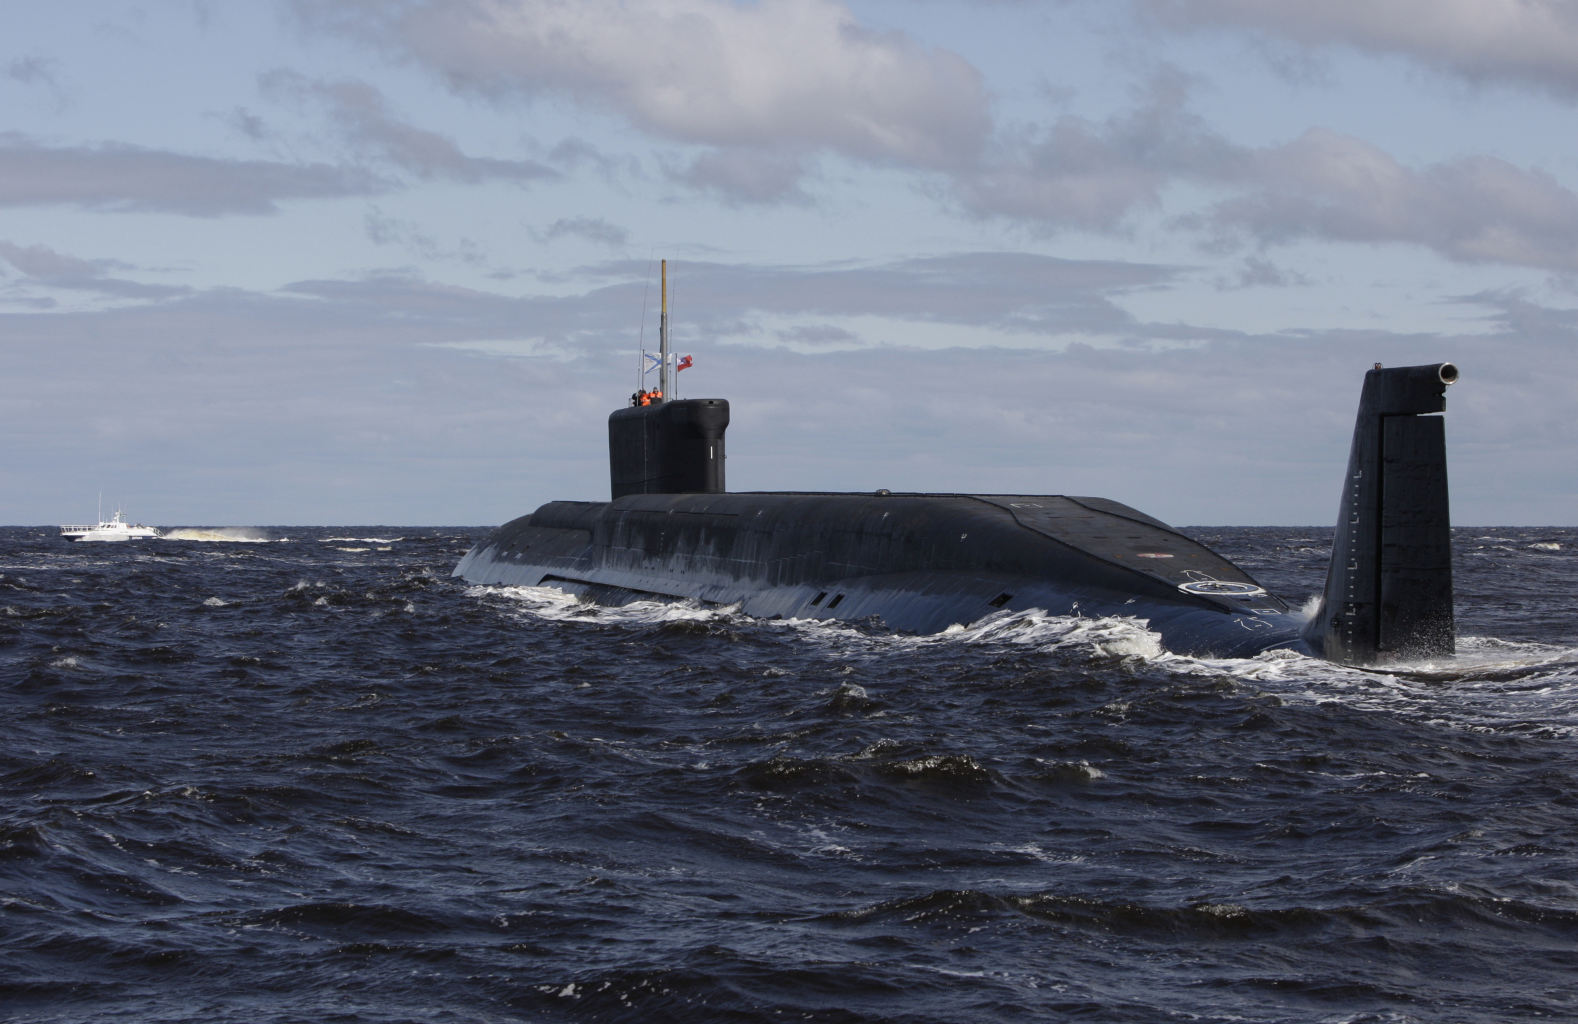 New Russian nuclear submarine enters service 9777885a380a3601260f6a706700d9da